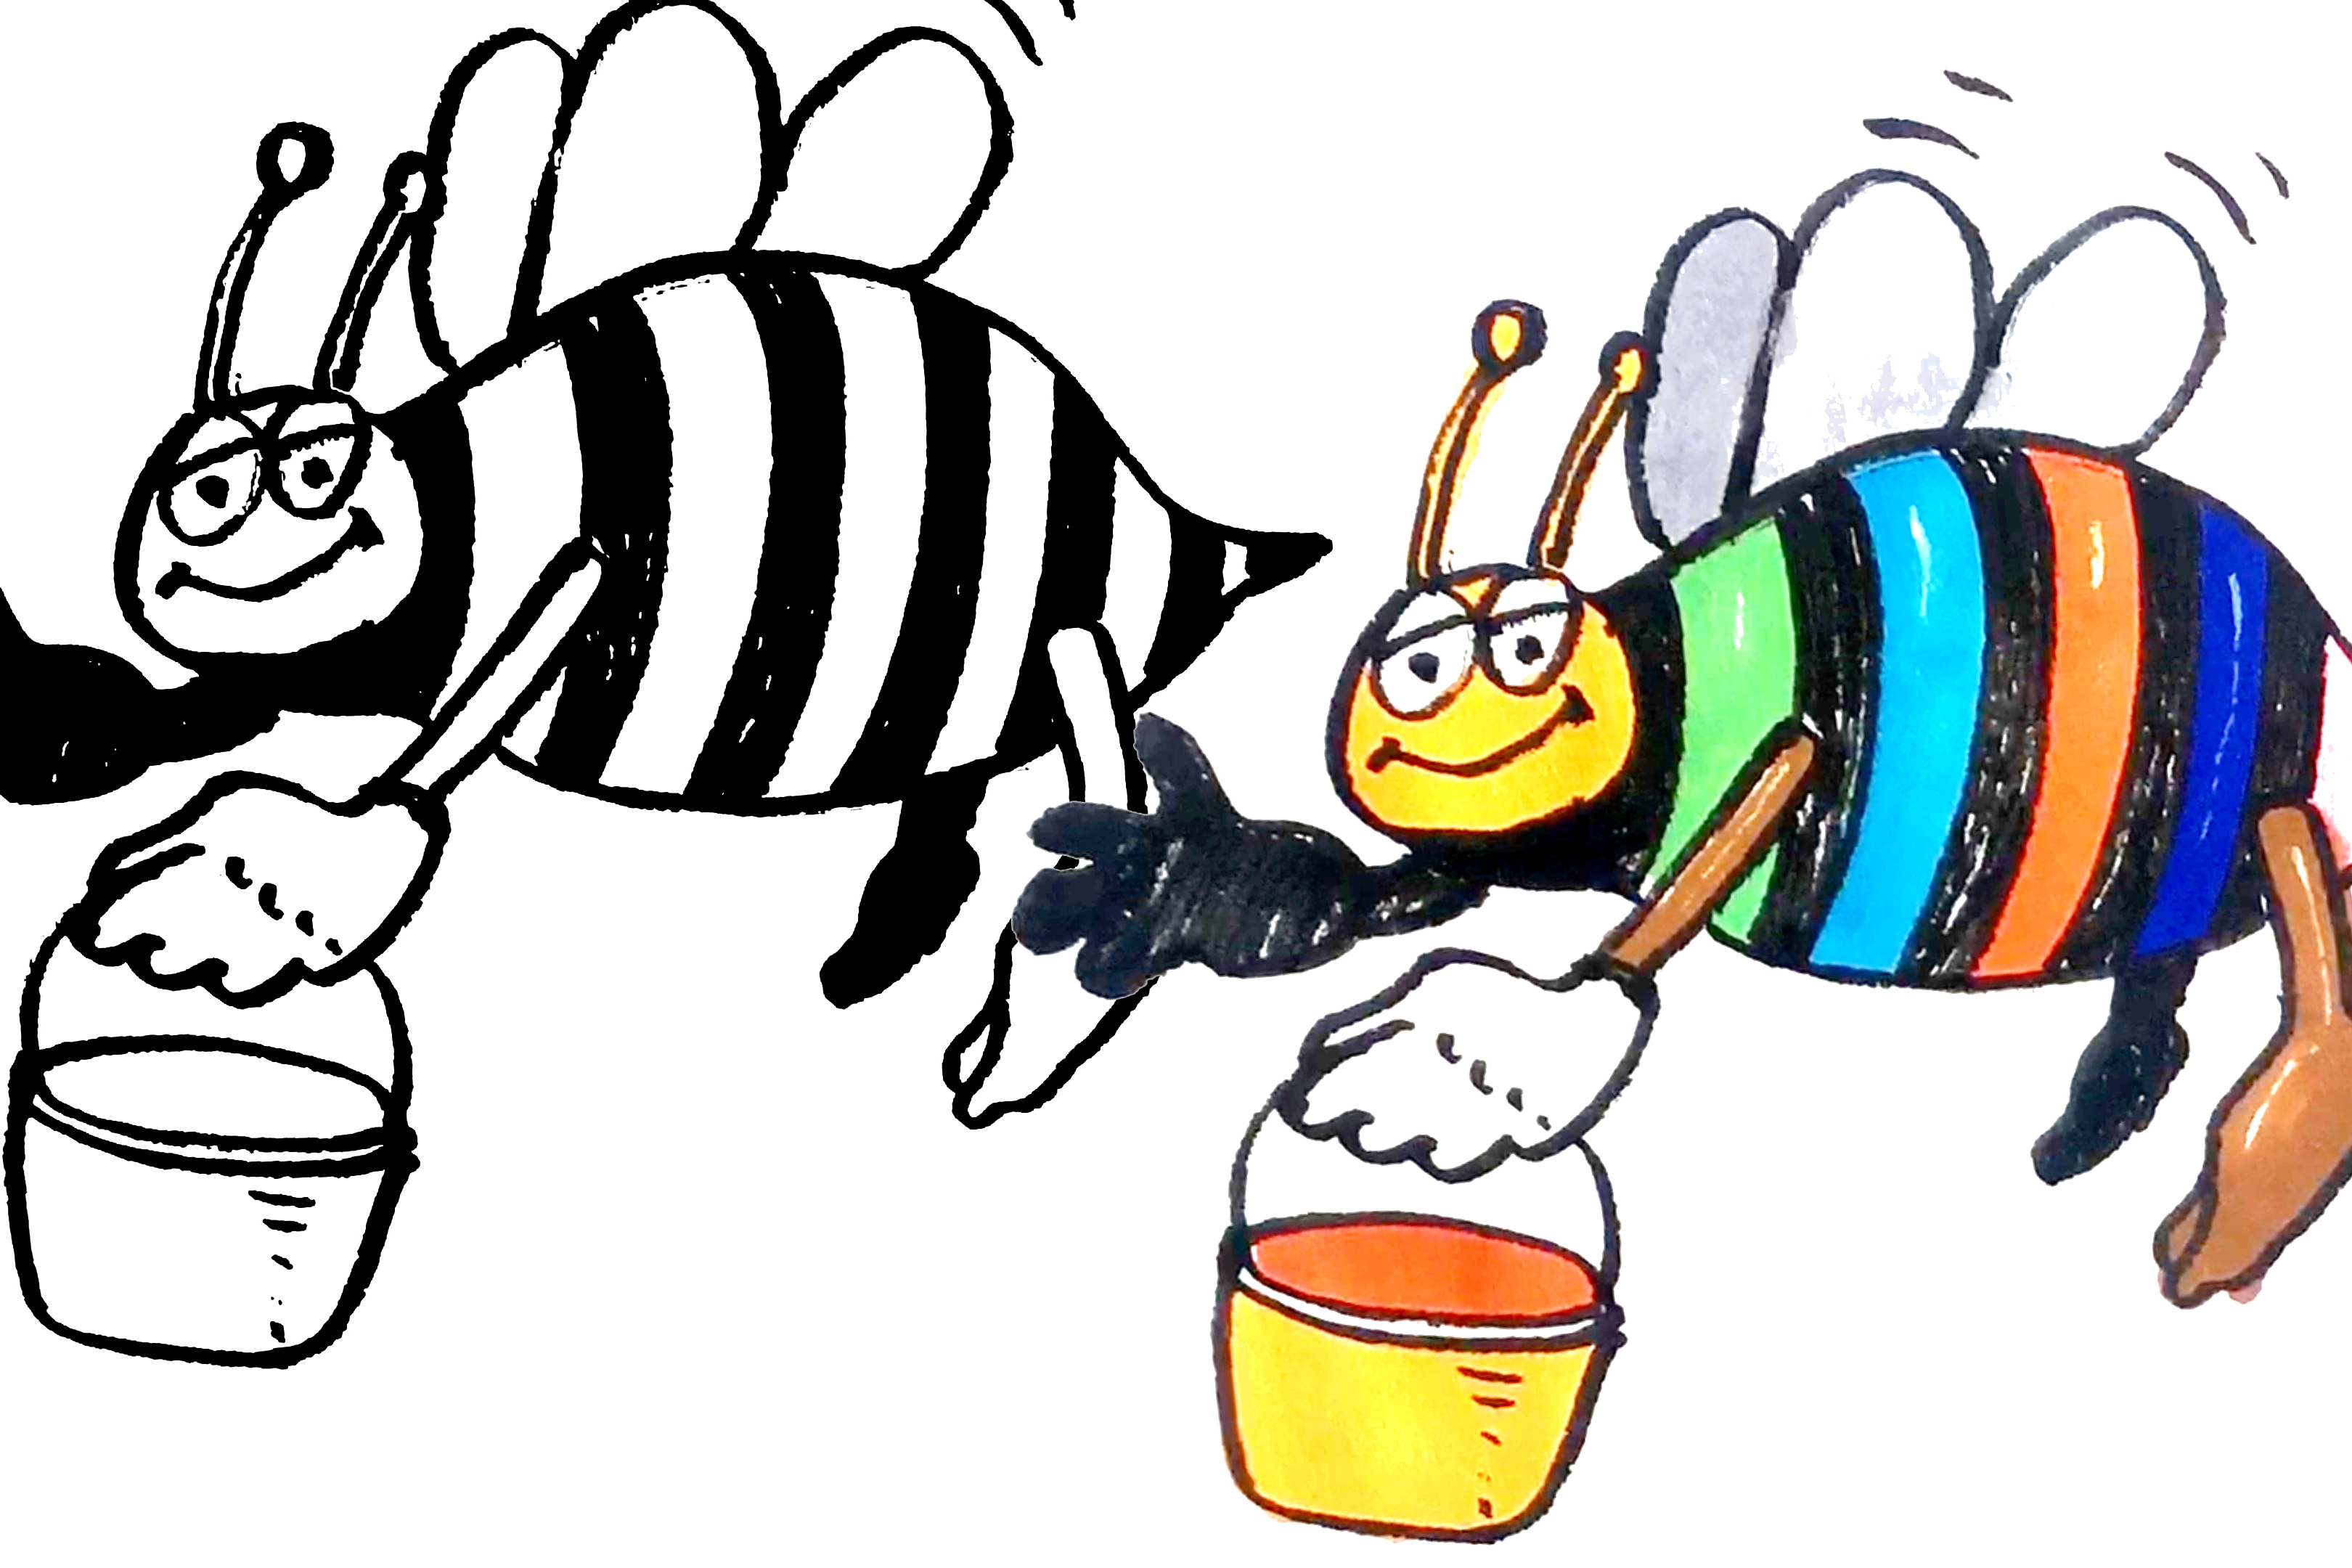 卡通小蜜蜂简笔画涂色图片